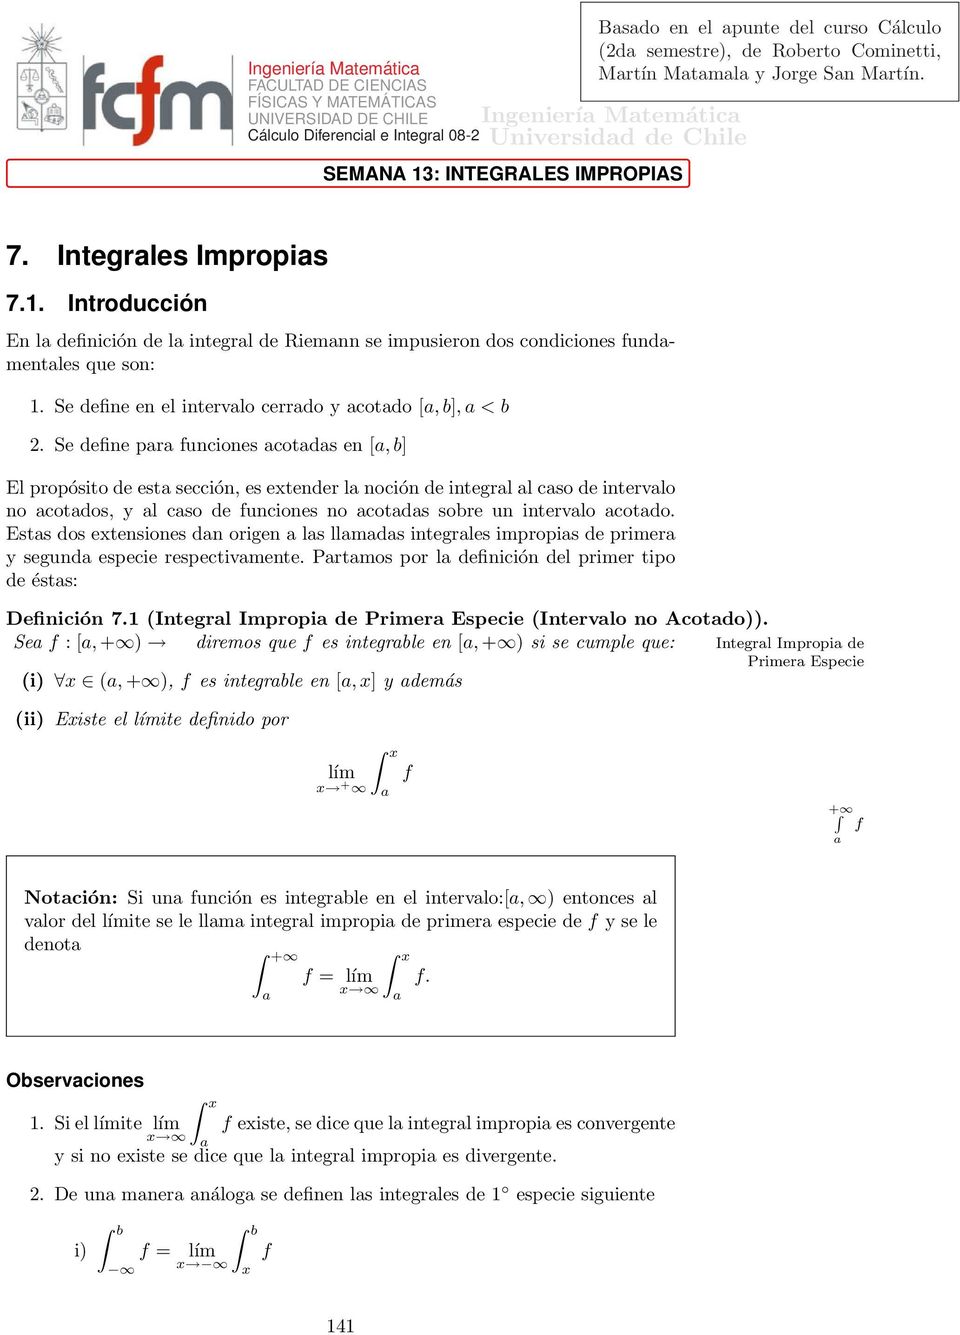 . Introducción En l deinición de l integrl de Riemnn se impusieron dos condiciones undmentles que son:. Se deine en el intervlo cerrdo y cotdo [,], < 2.